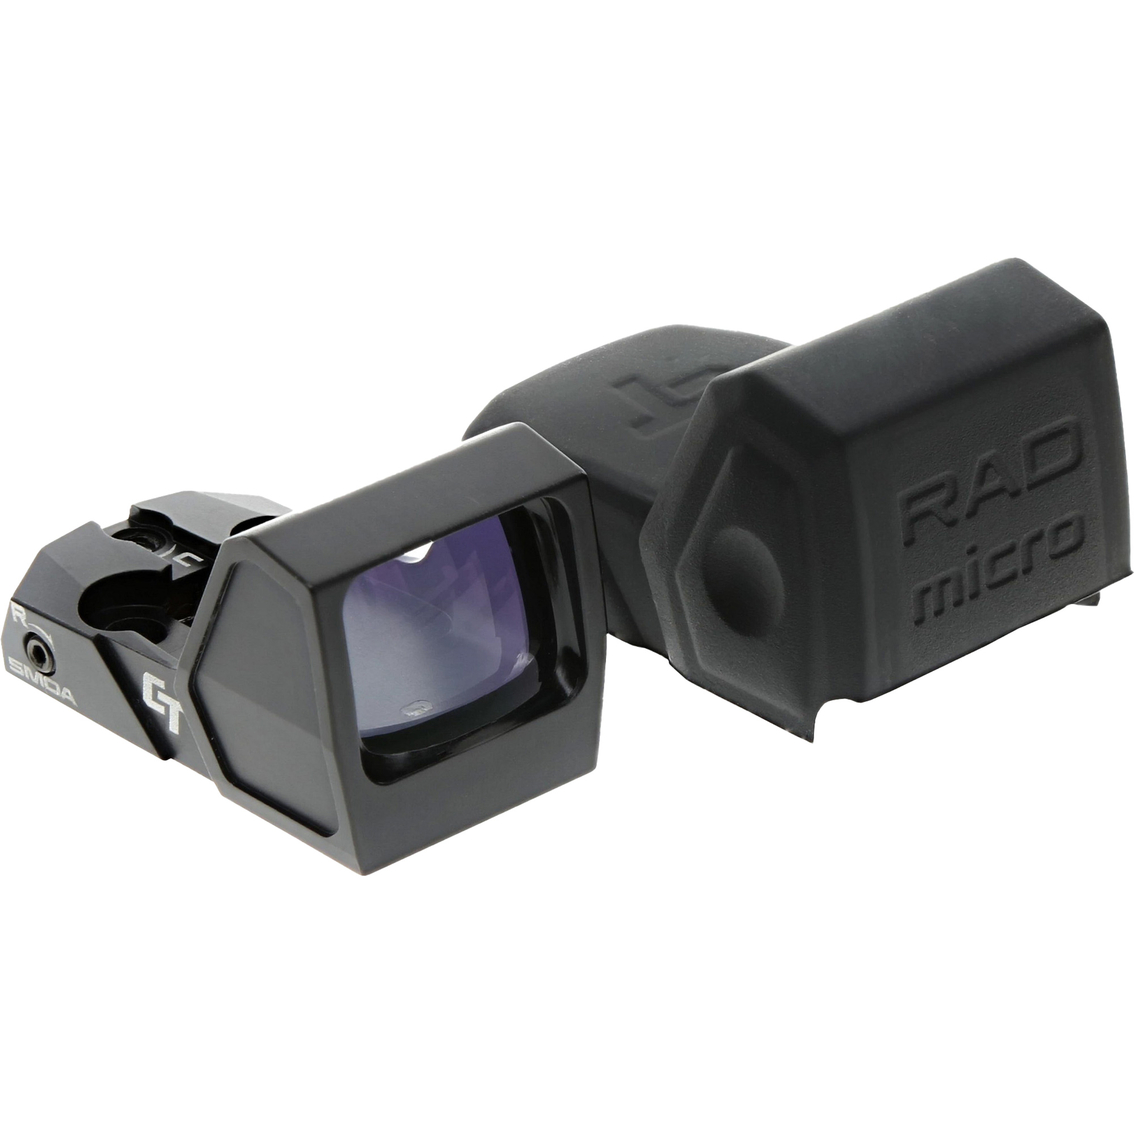 Crimson Trace RAD Micro Pro 1x 5 MOA Green Dot Open Reflex Sight Black - Image 3 of 3